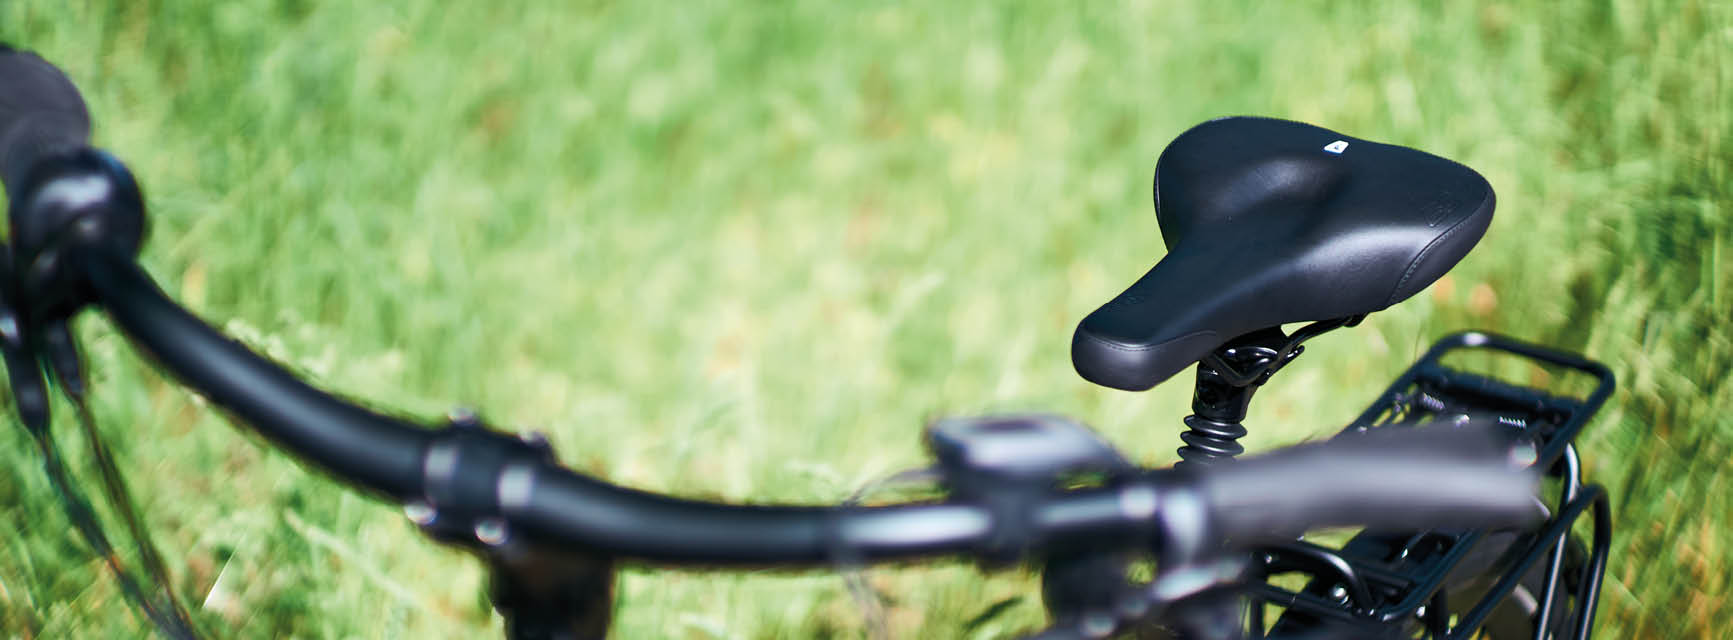 Ein Fahrradsattel und ein Lenker im Fokus. Im Hintergrund eine grüne Wiese